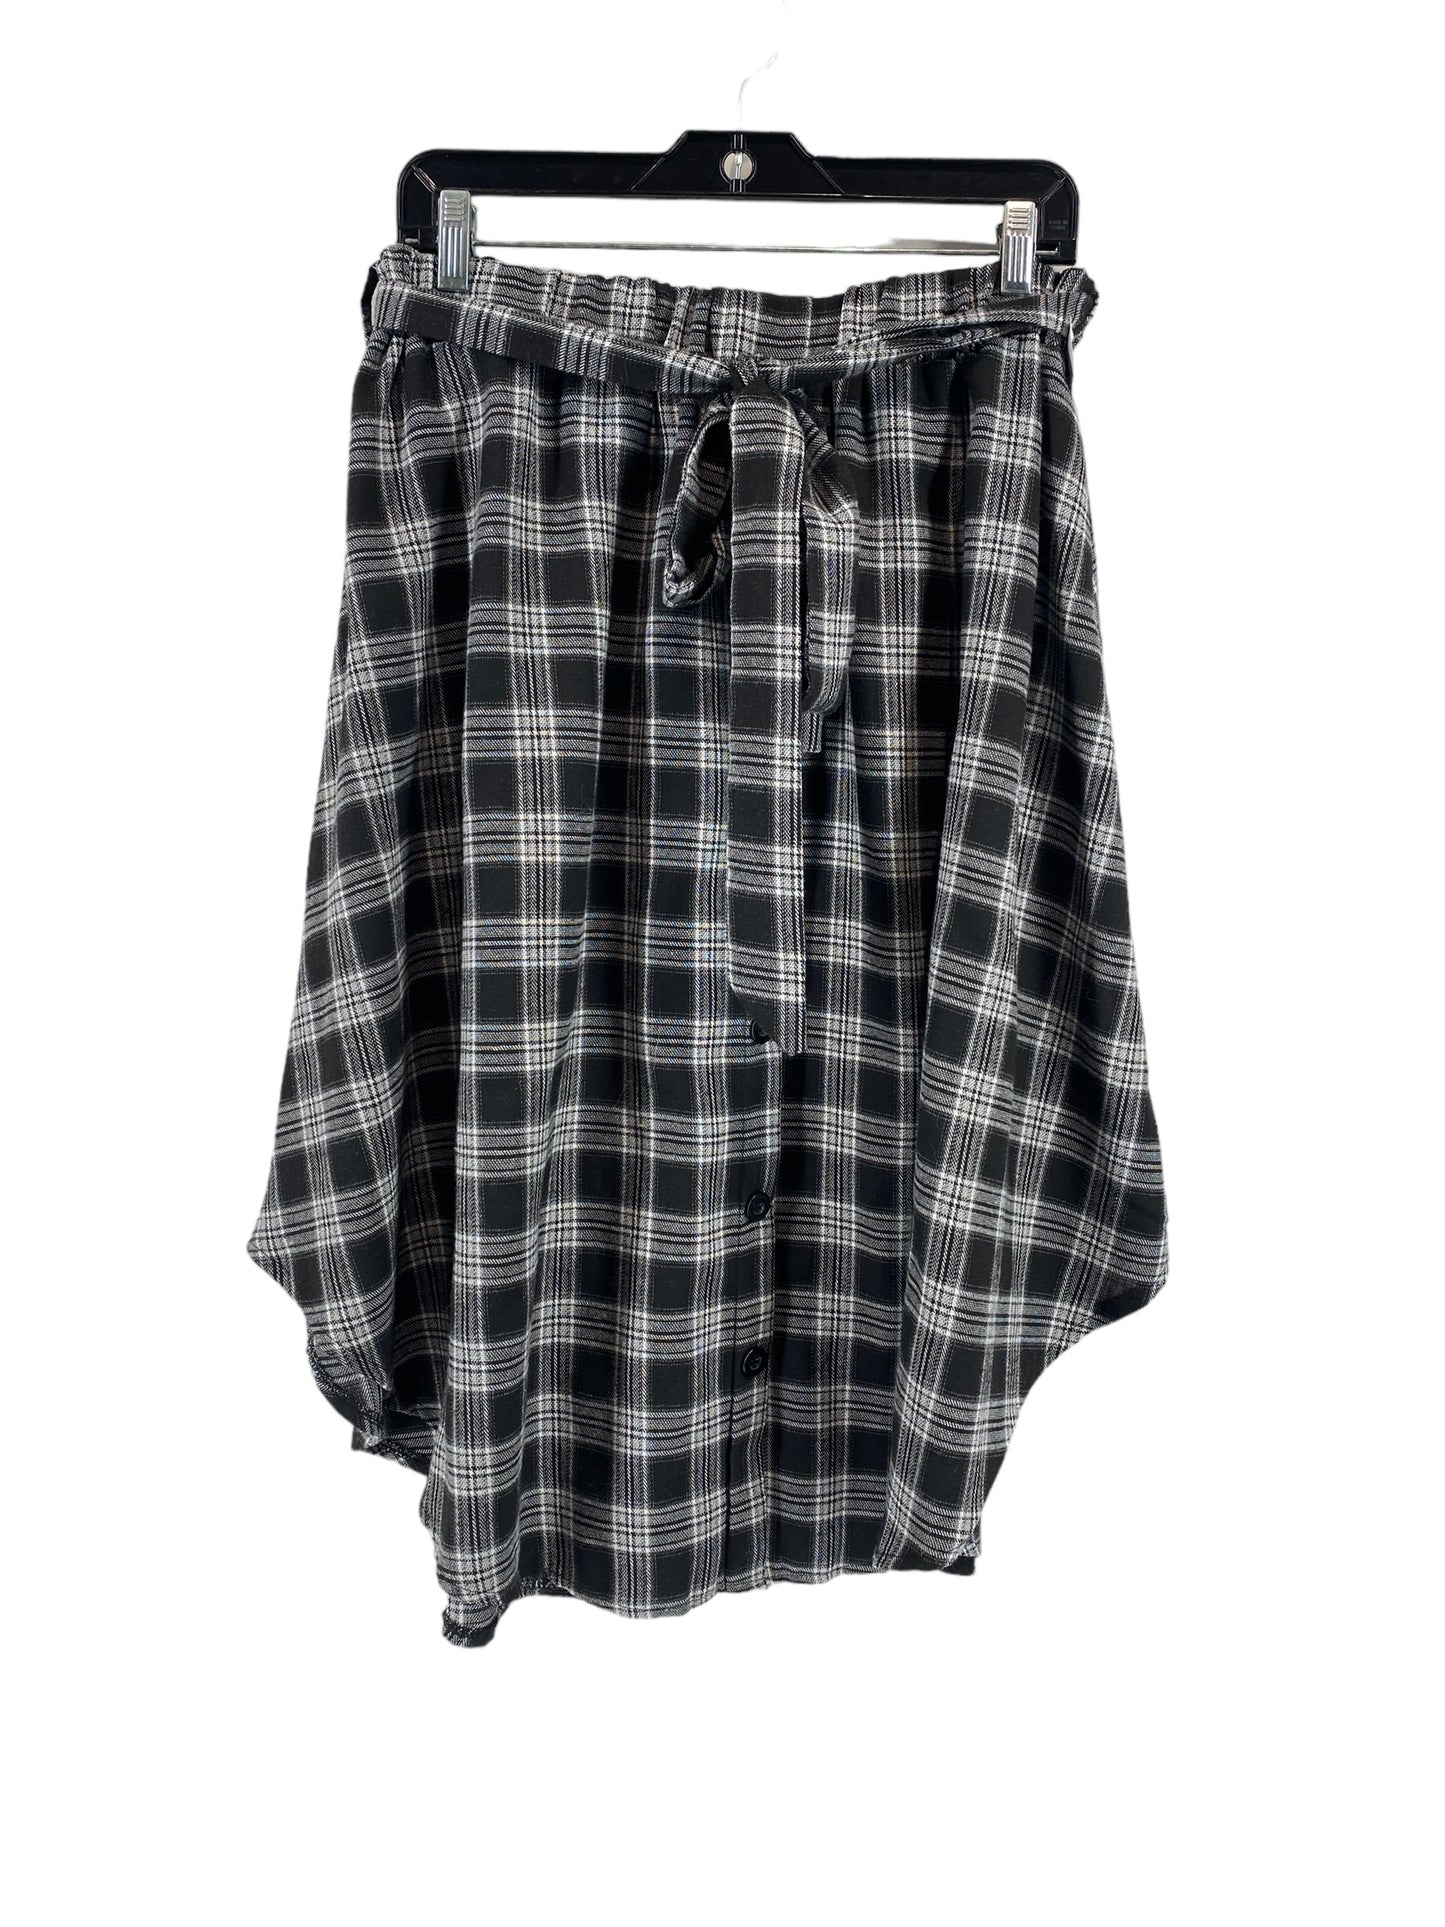 Skirt Midi By Shein  Size: 1x